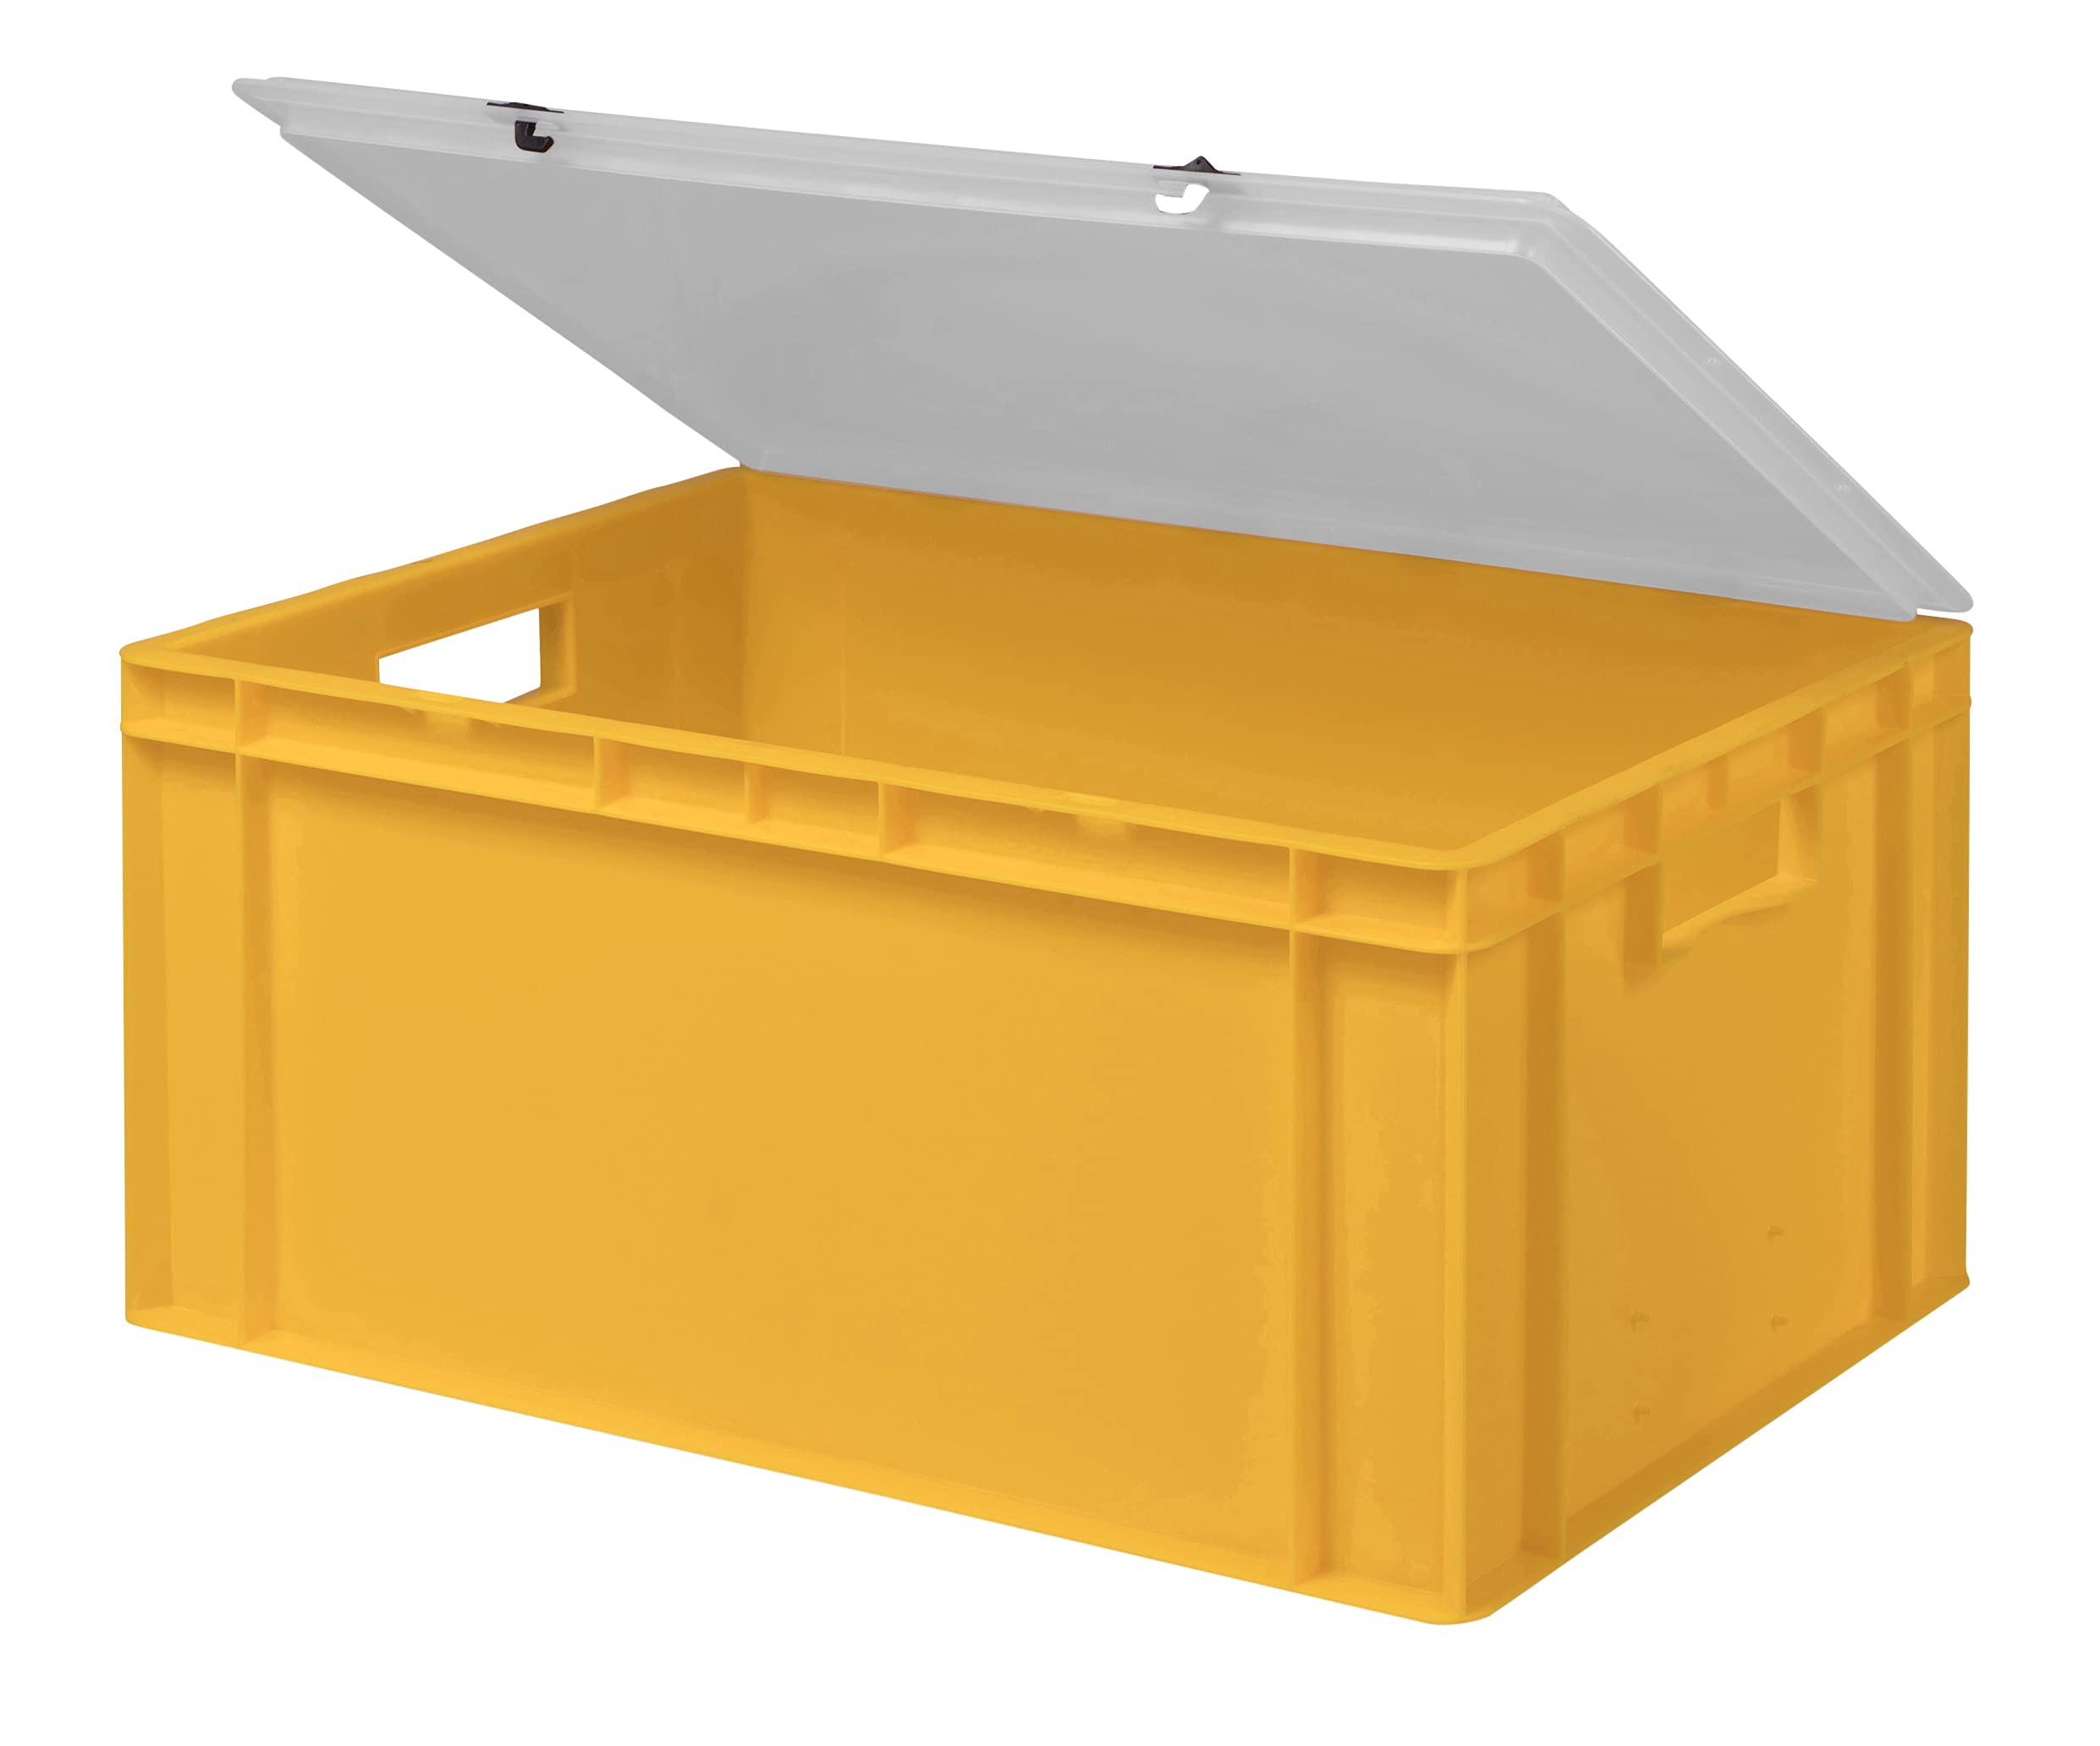 1a-TopStore Design Eurobox Stapelbox Lagerbehälter Kunststoffbox in 5 Farben und 16 Größen mit transparentem Deckel (matt) (gelb, 60x40x28 cm)